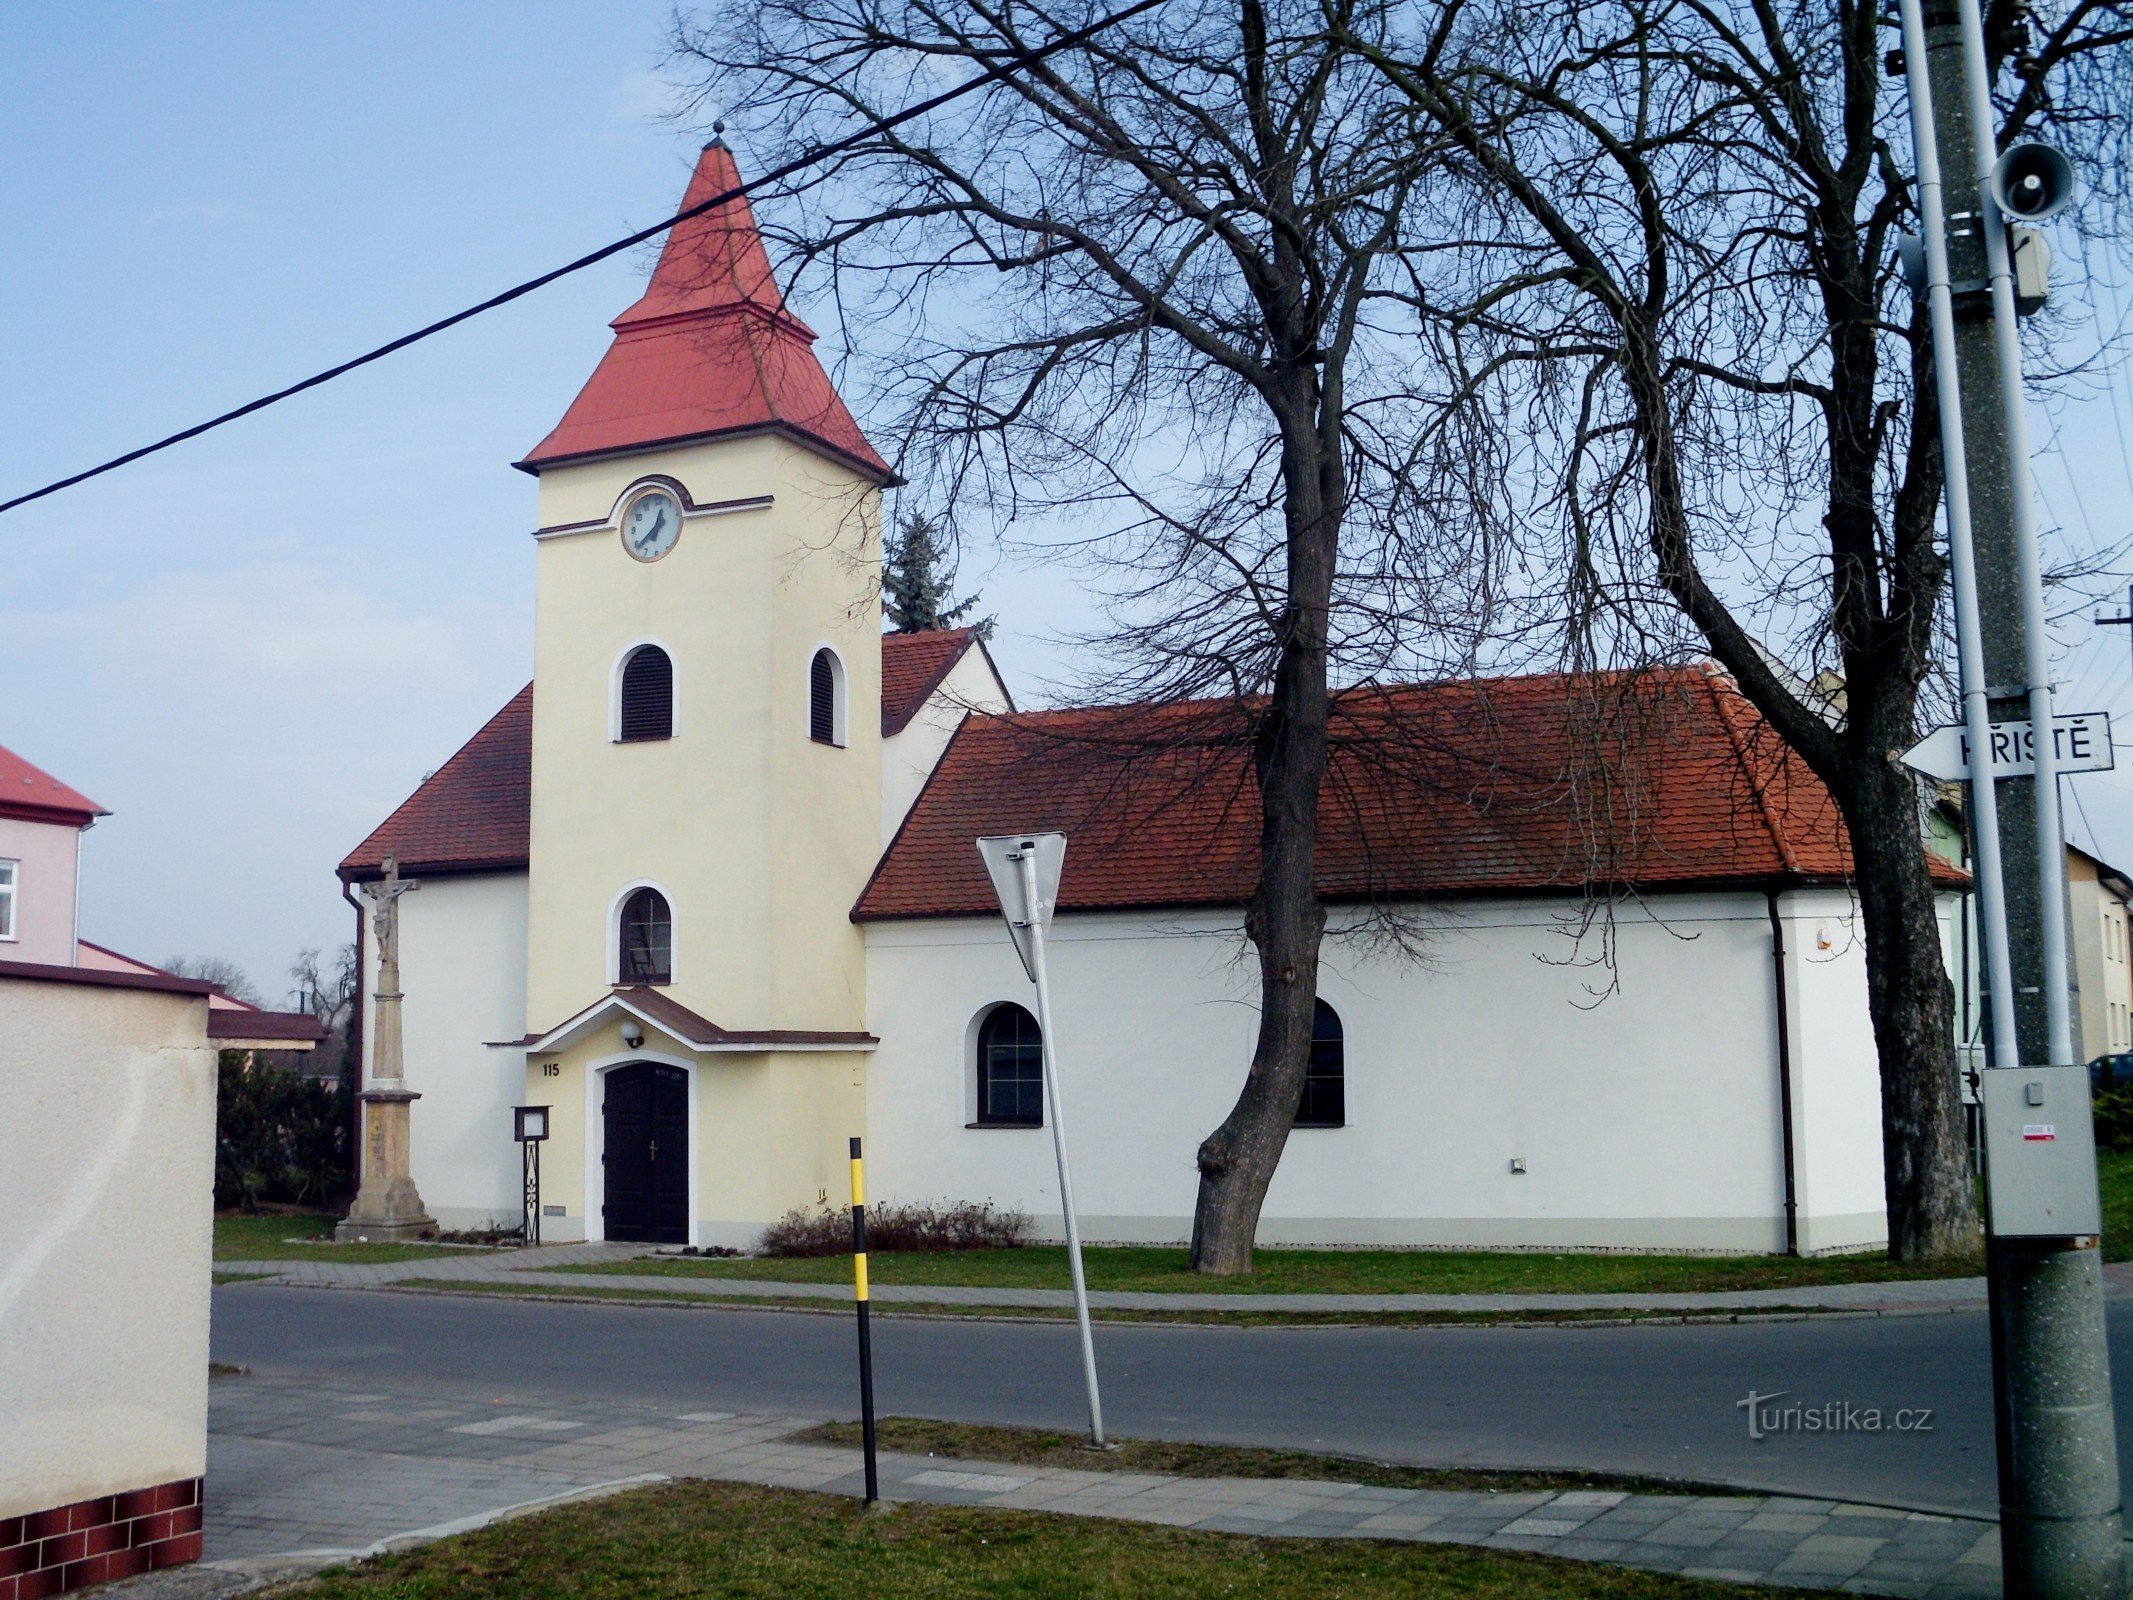 church of st. Anne